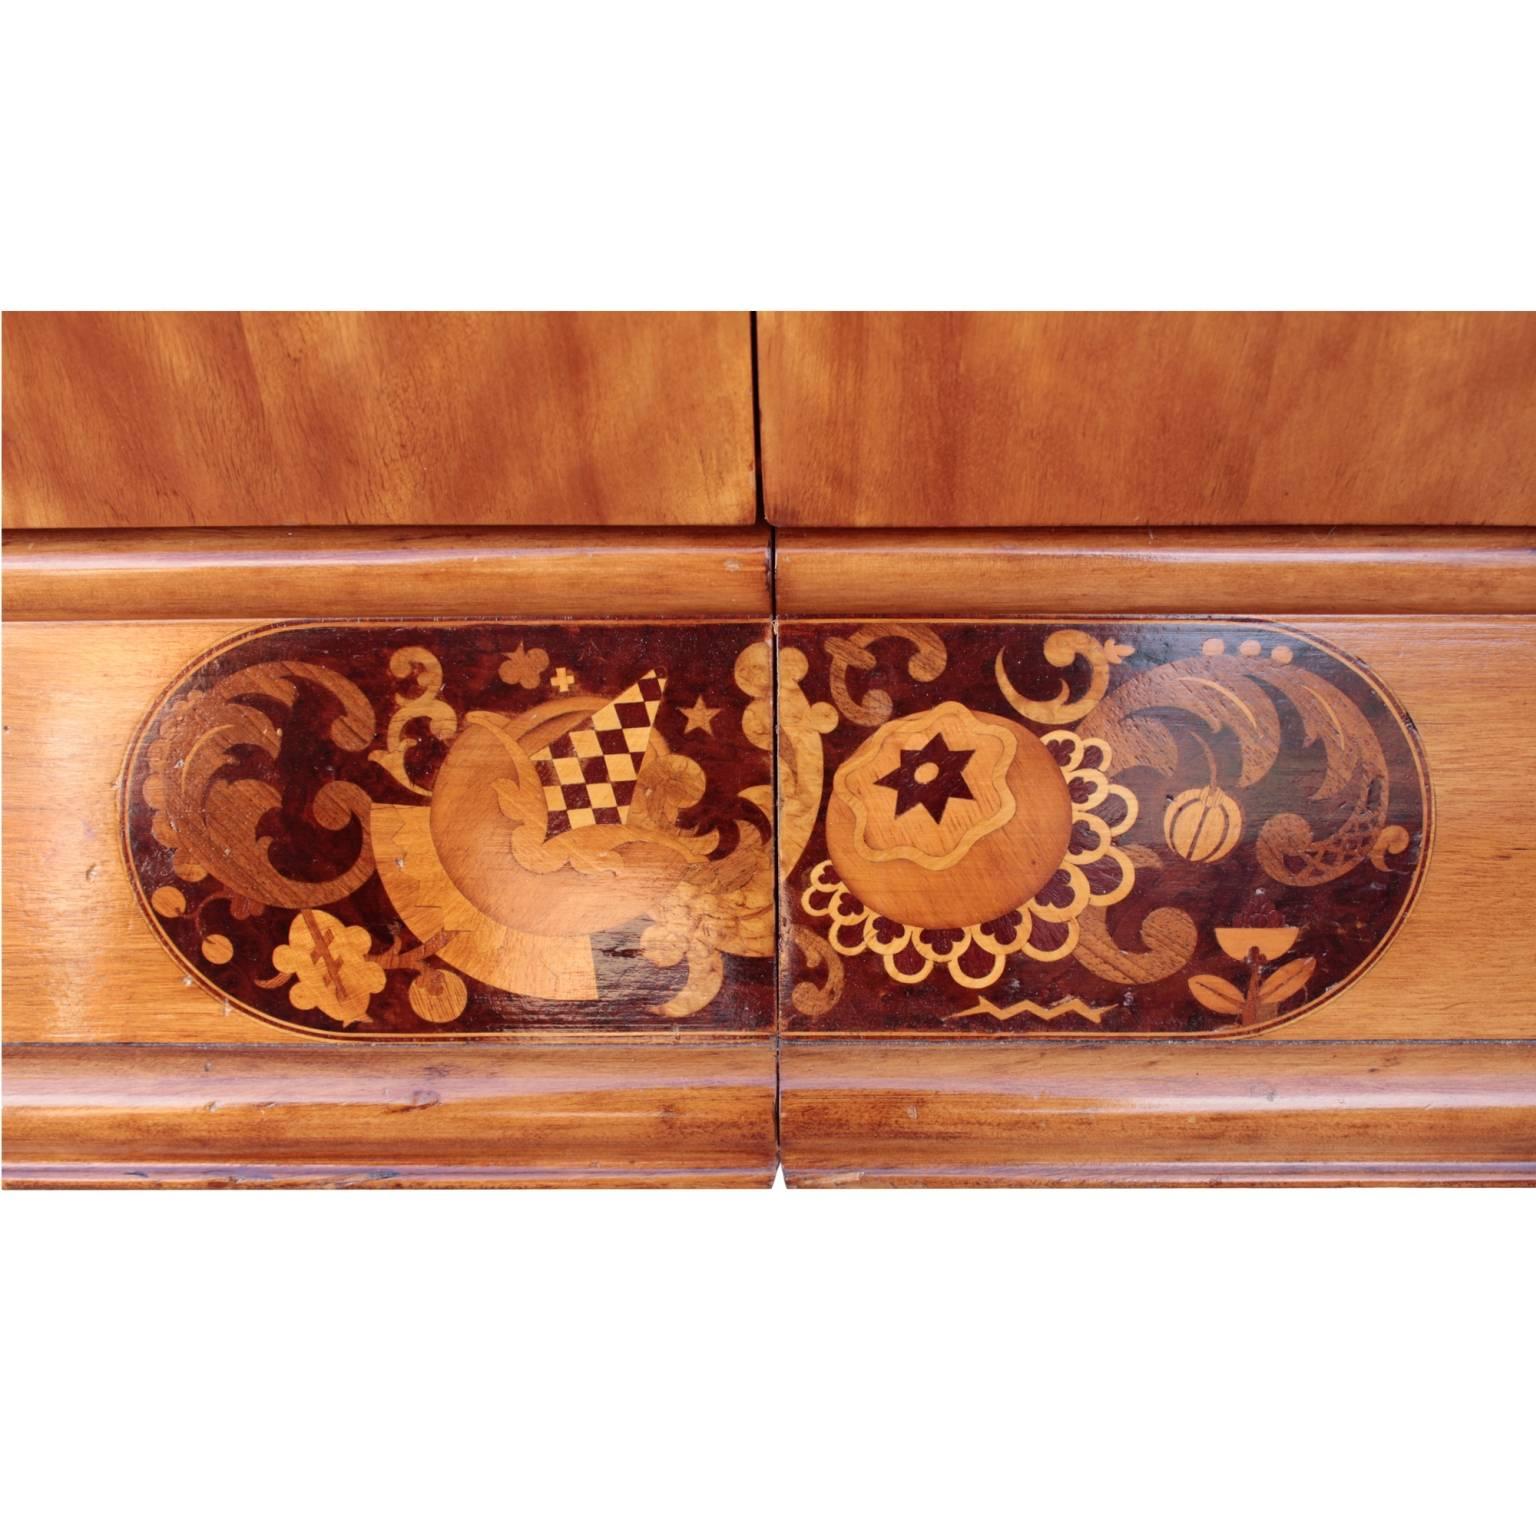 Ash Swedish Art Deco Period Cabinet For Sale